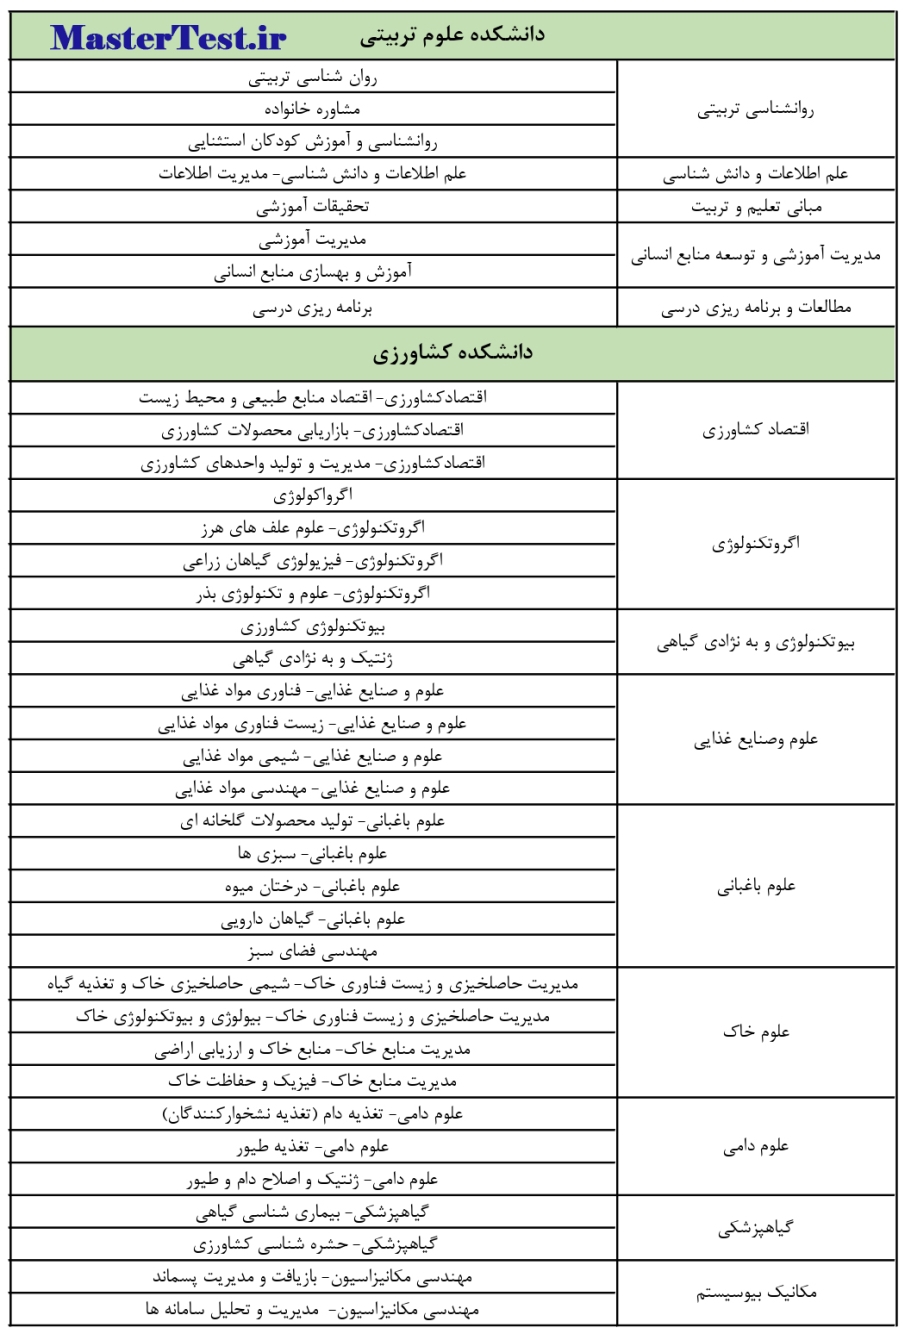 رشته های کارشناسی ارشد بدون آزمون دانشگاه فردوسی مشهد صفحه 3